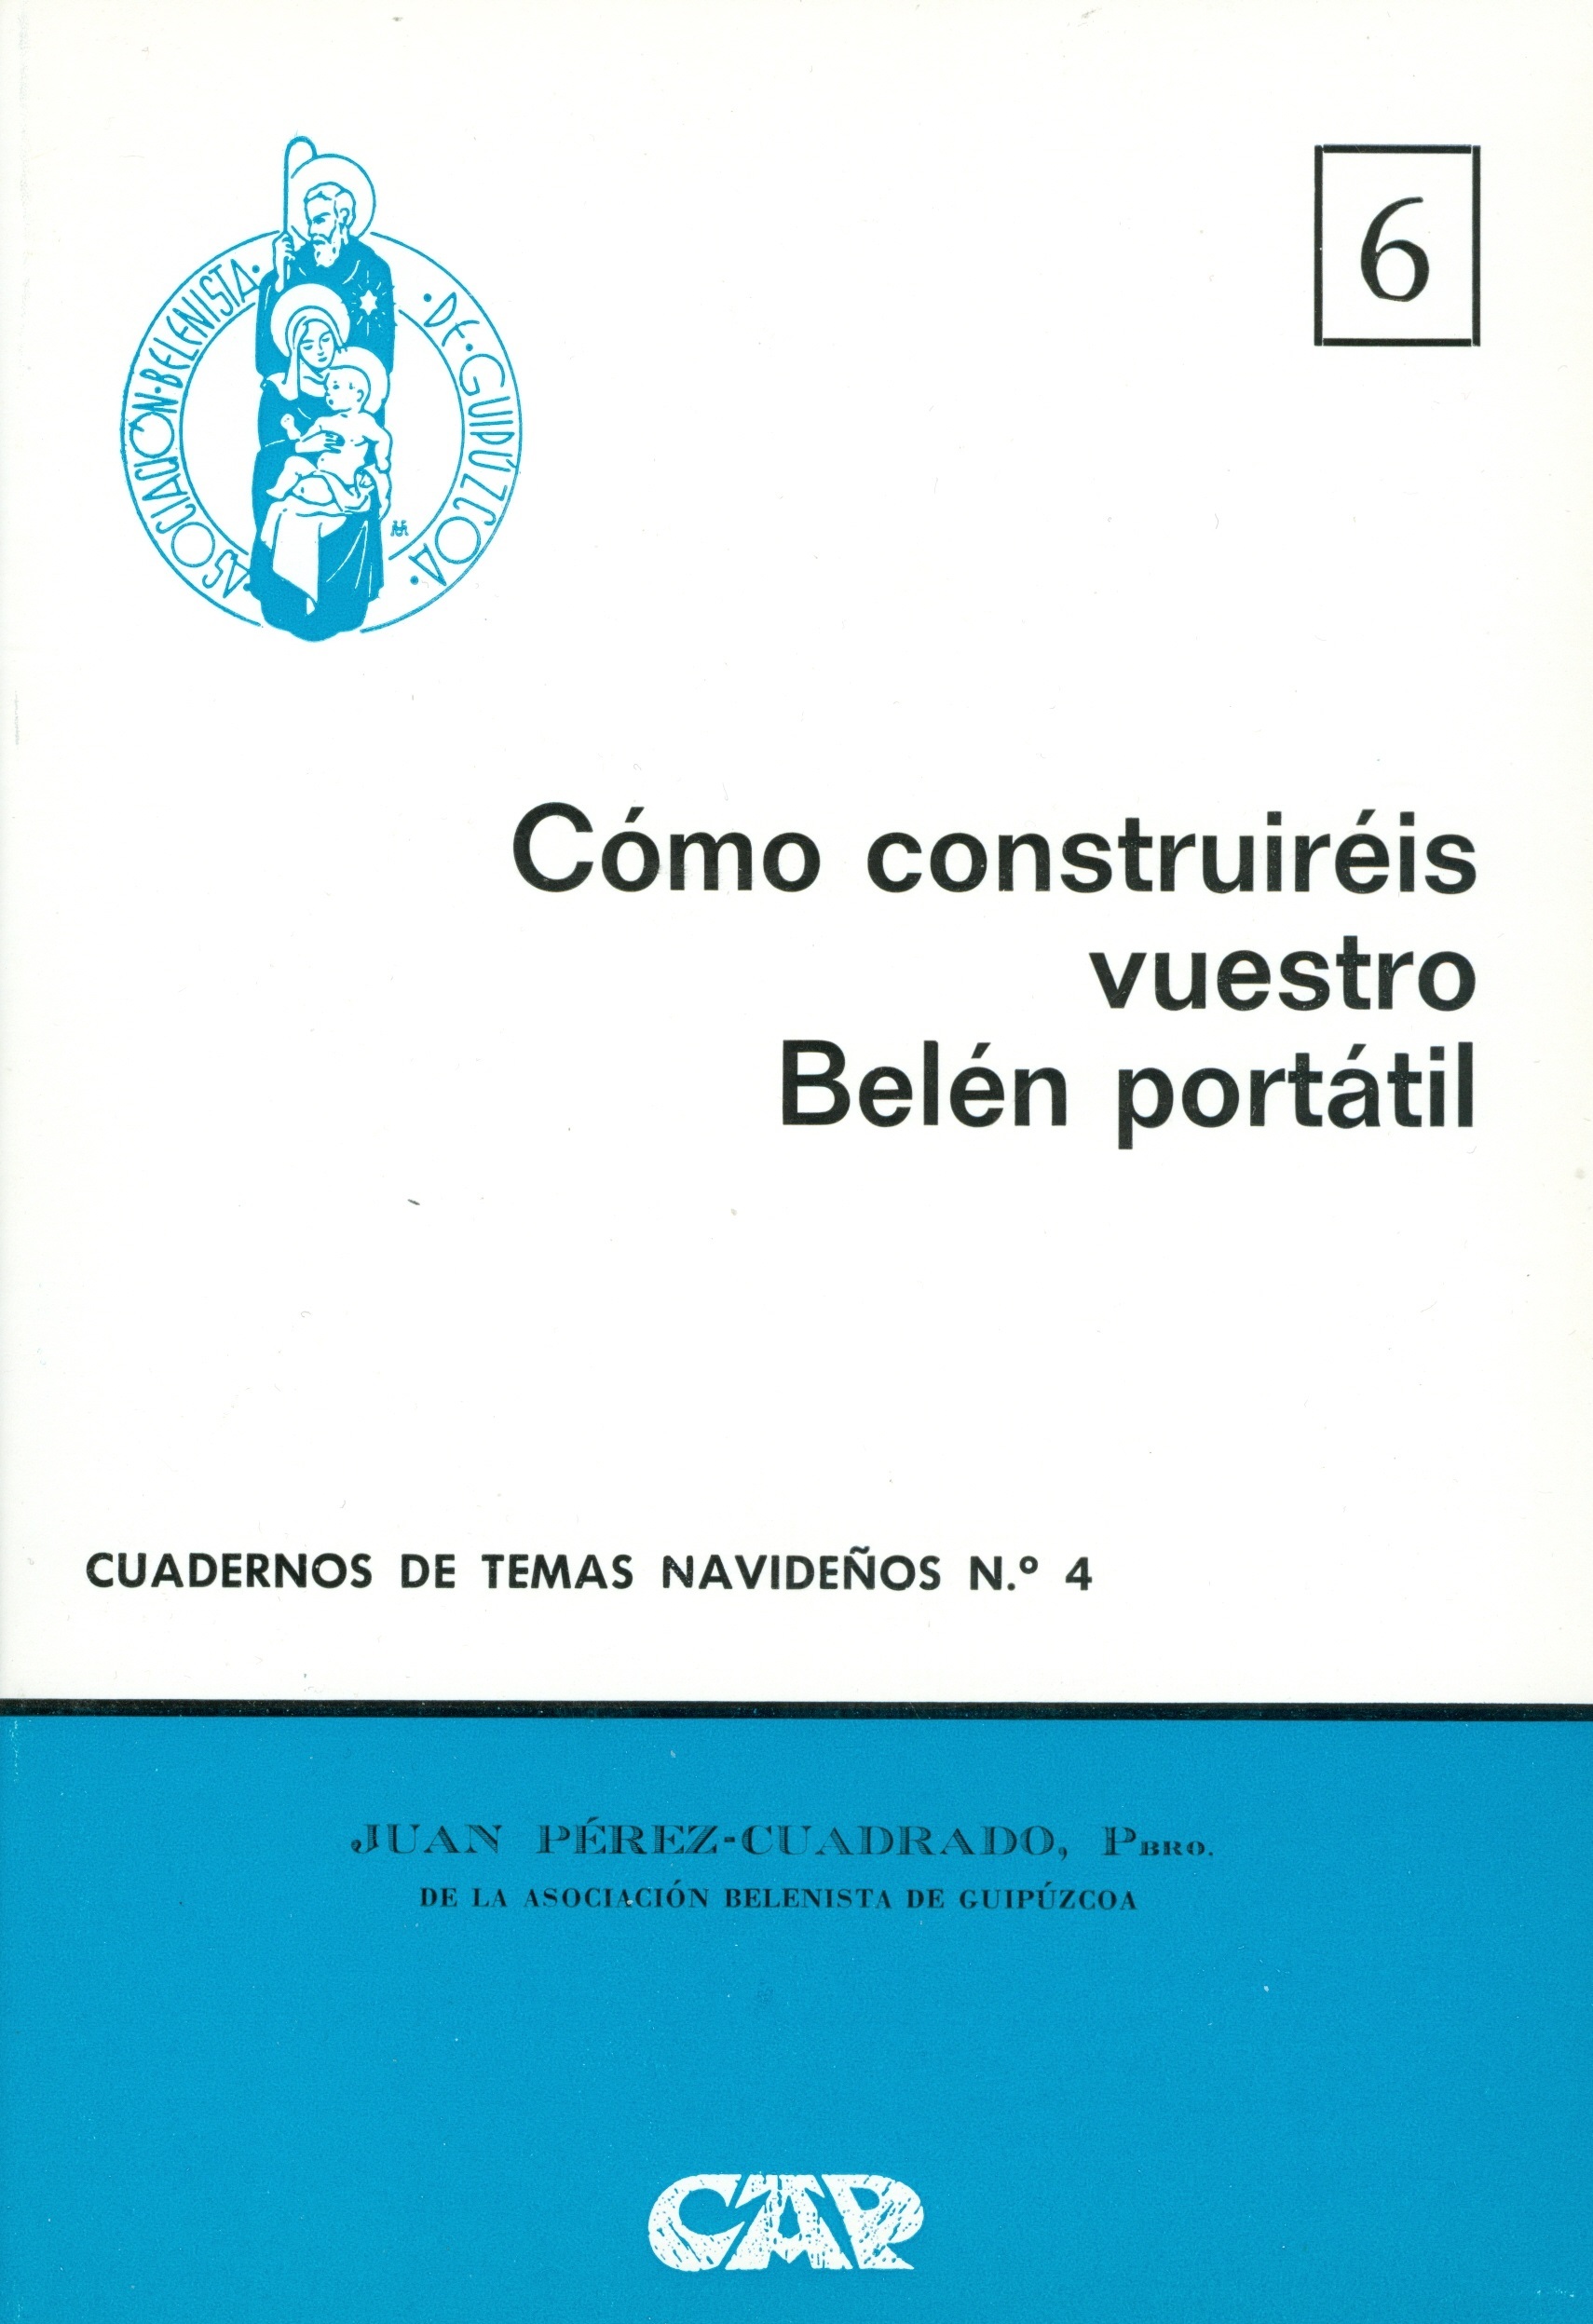 Portada del Cuaderno de Temas Navideños nº 4, "Cómo construiréis vuestro Belén portátil" escrito por Juan Pérez-Cuadrado y editado por la Asociación Belenista de Guipúzcoa (1974)